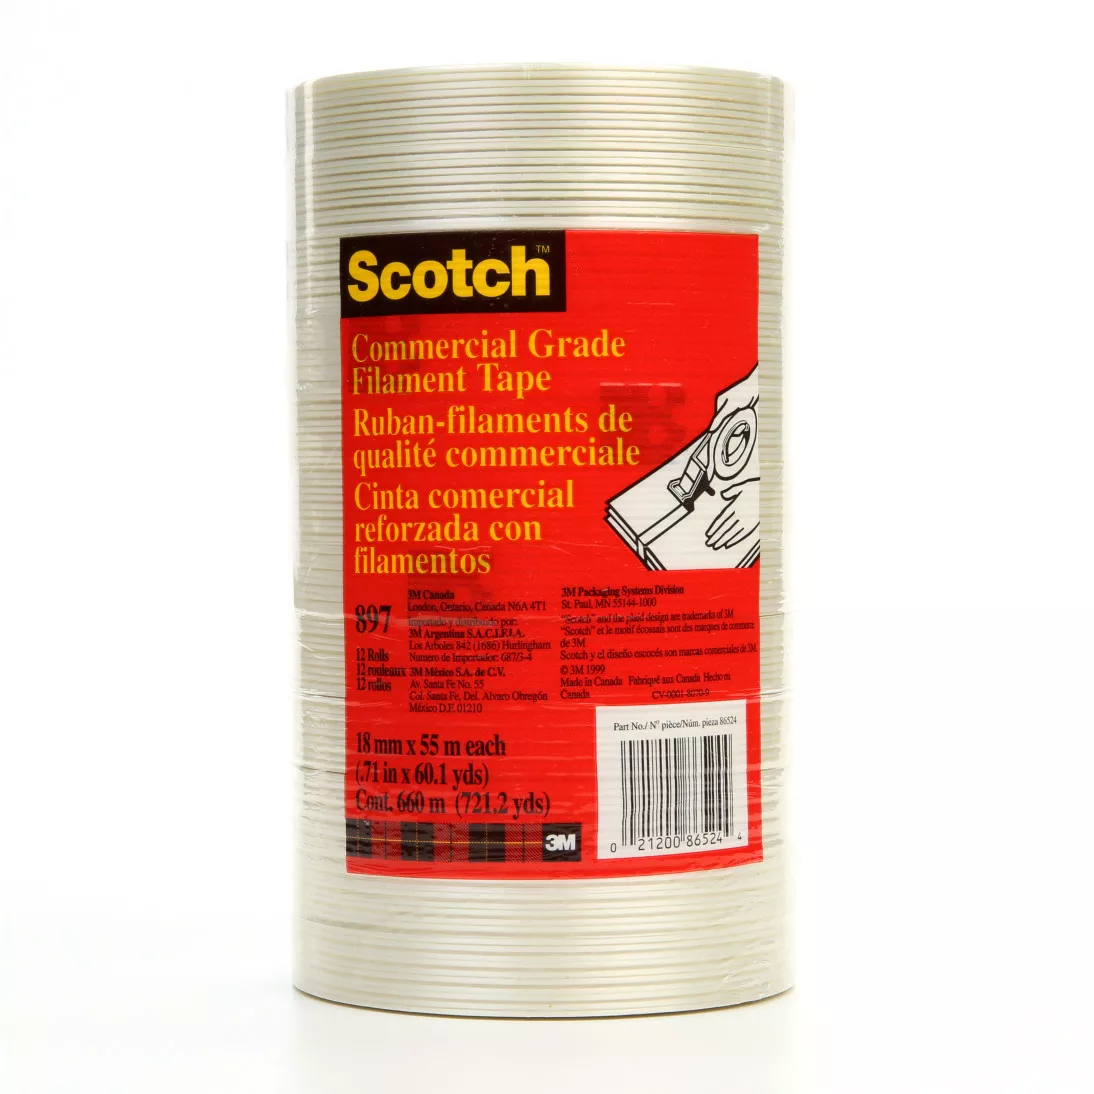 Scotch® Filament Tape 897, Clear, 18 mm x 55 m, 5 mil, 48 Rolls/Case